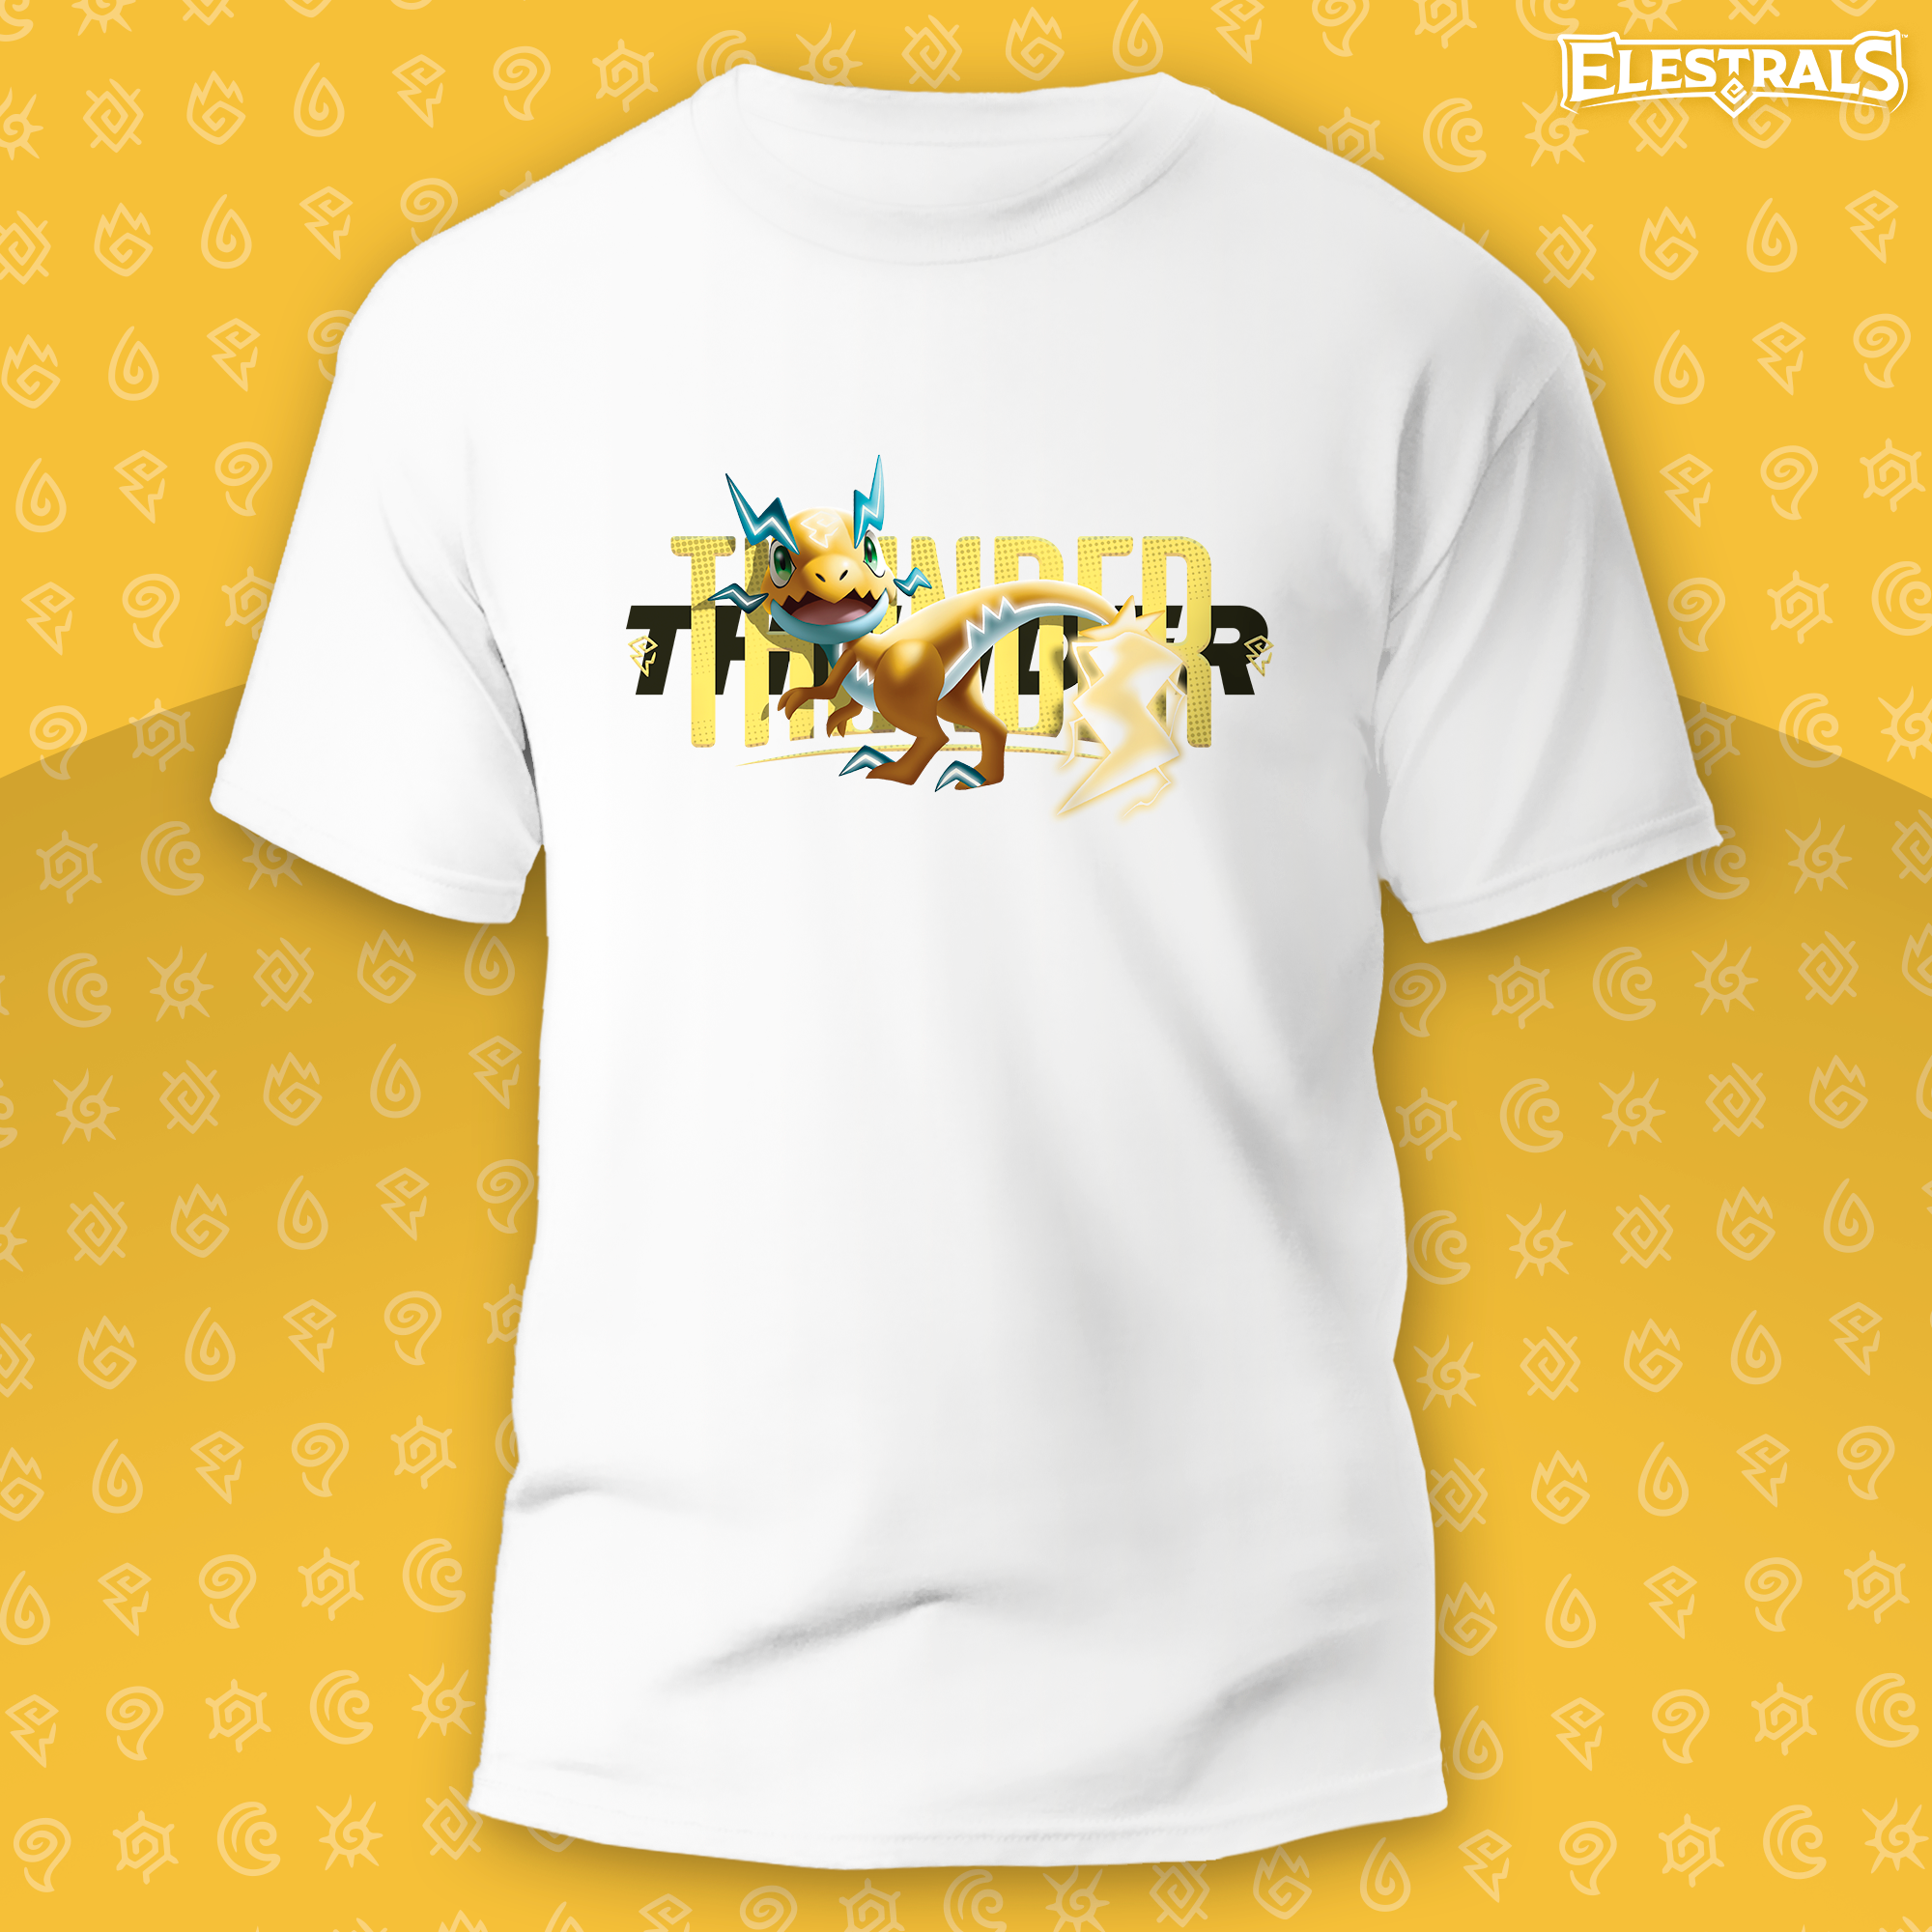 Zaptor Thunder Spirit Graphic T-Shirt - Adult